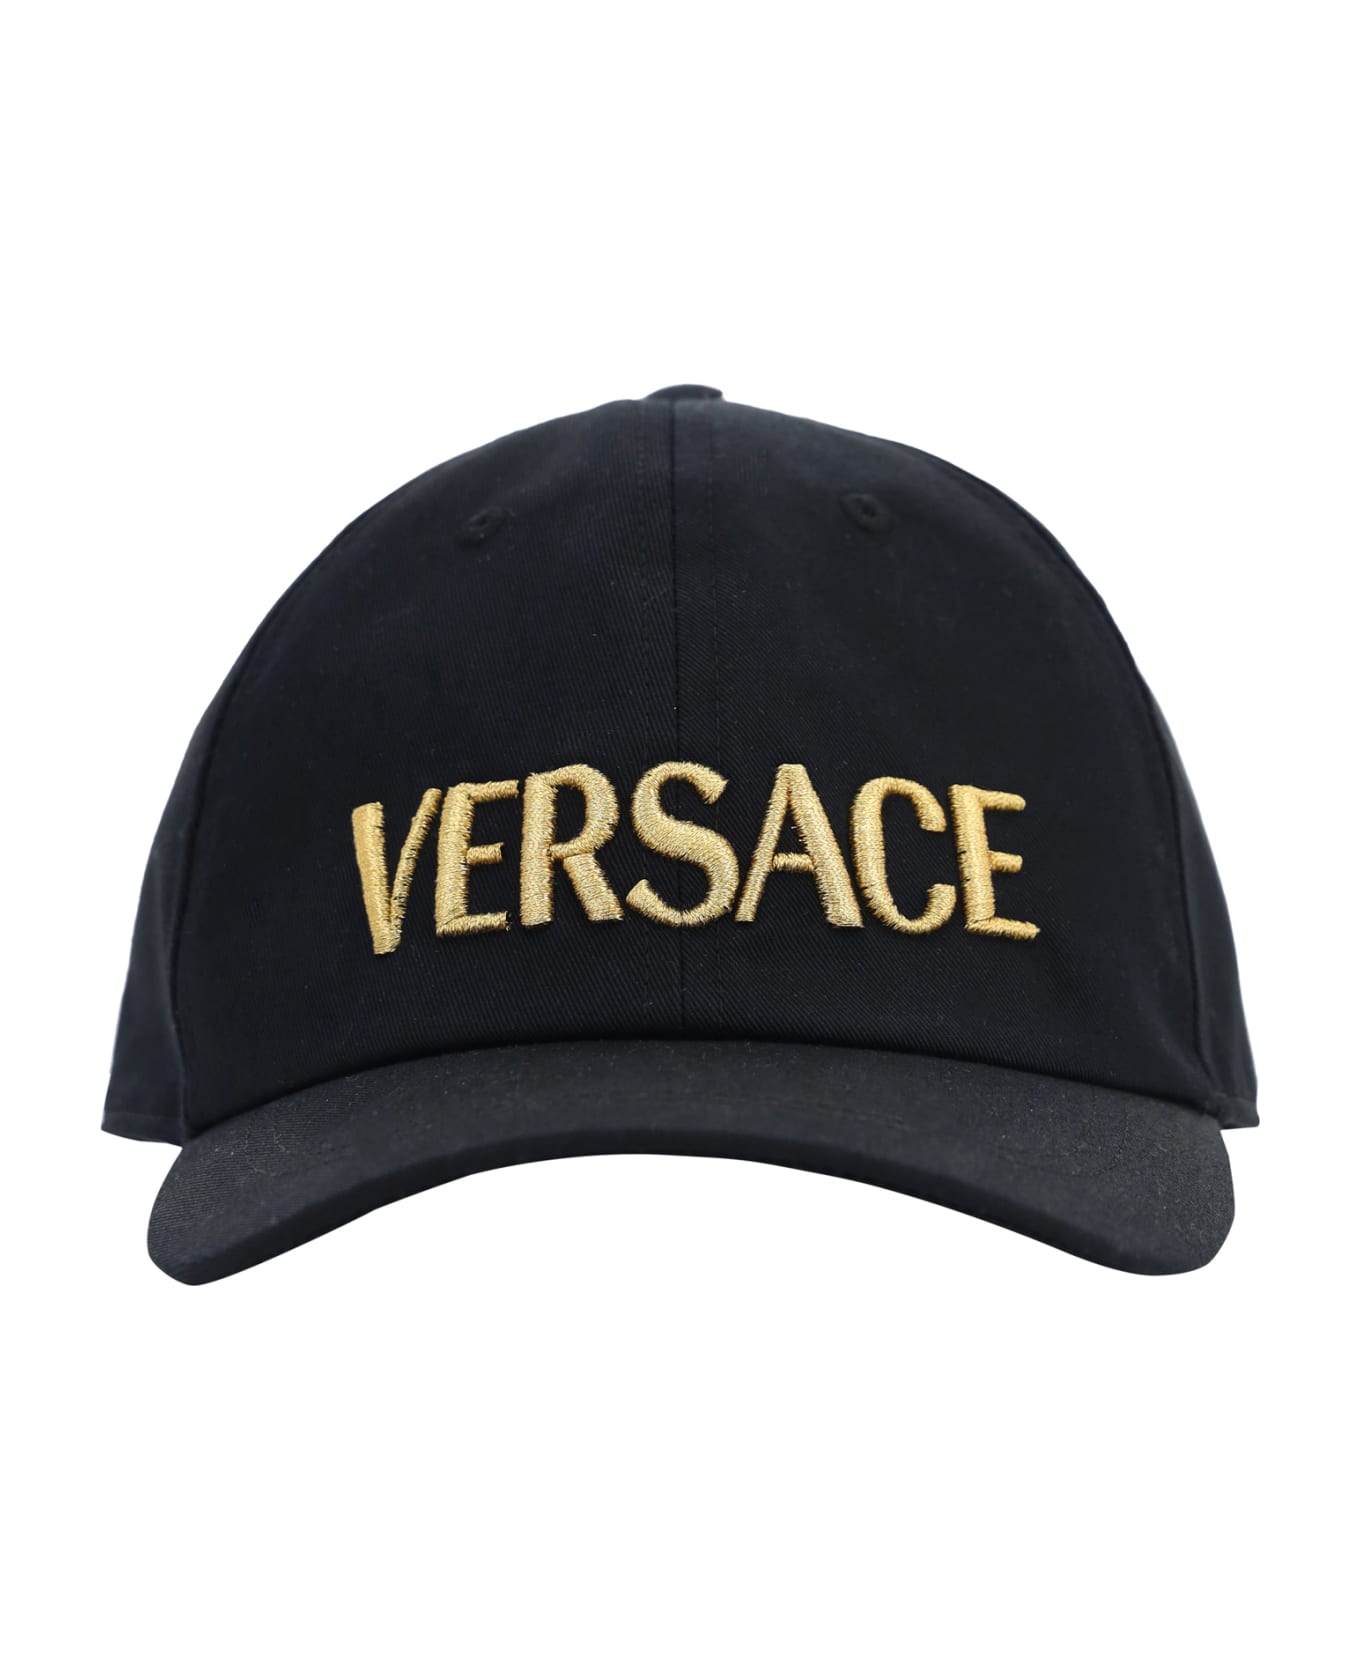 Versace Black Cotton Hat - Nero+oro 帽子